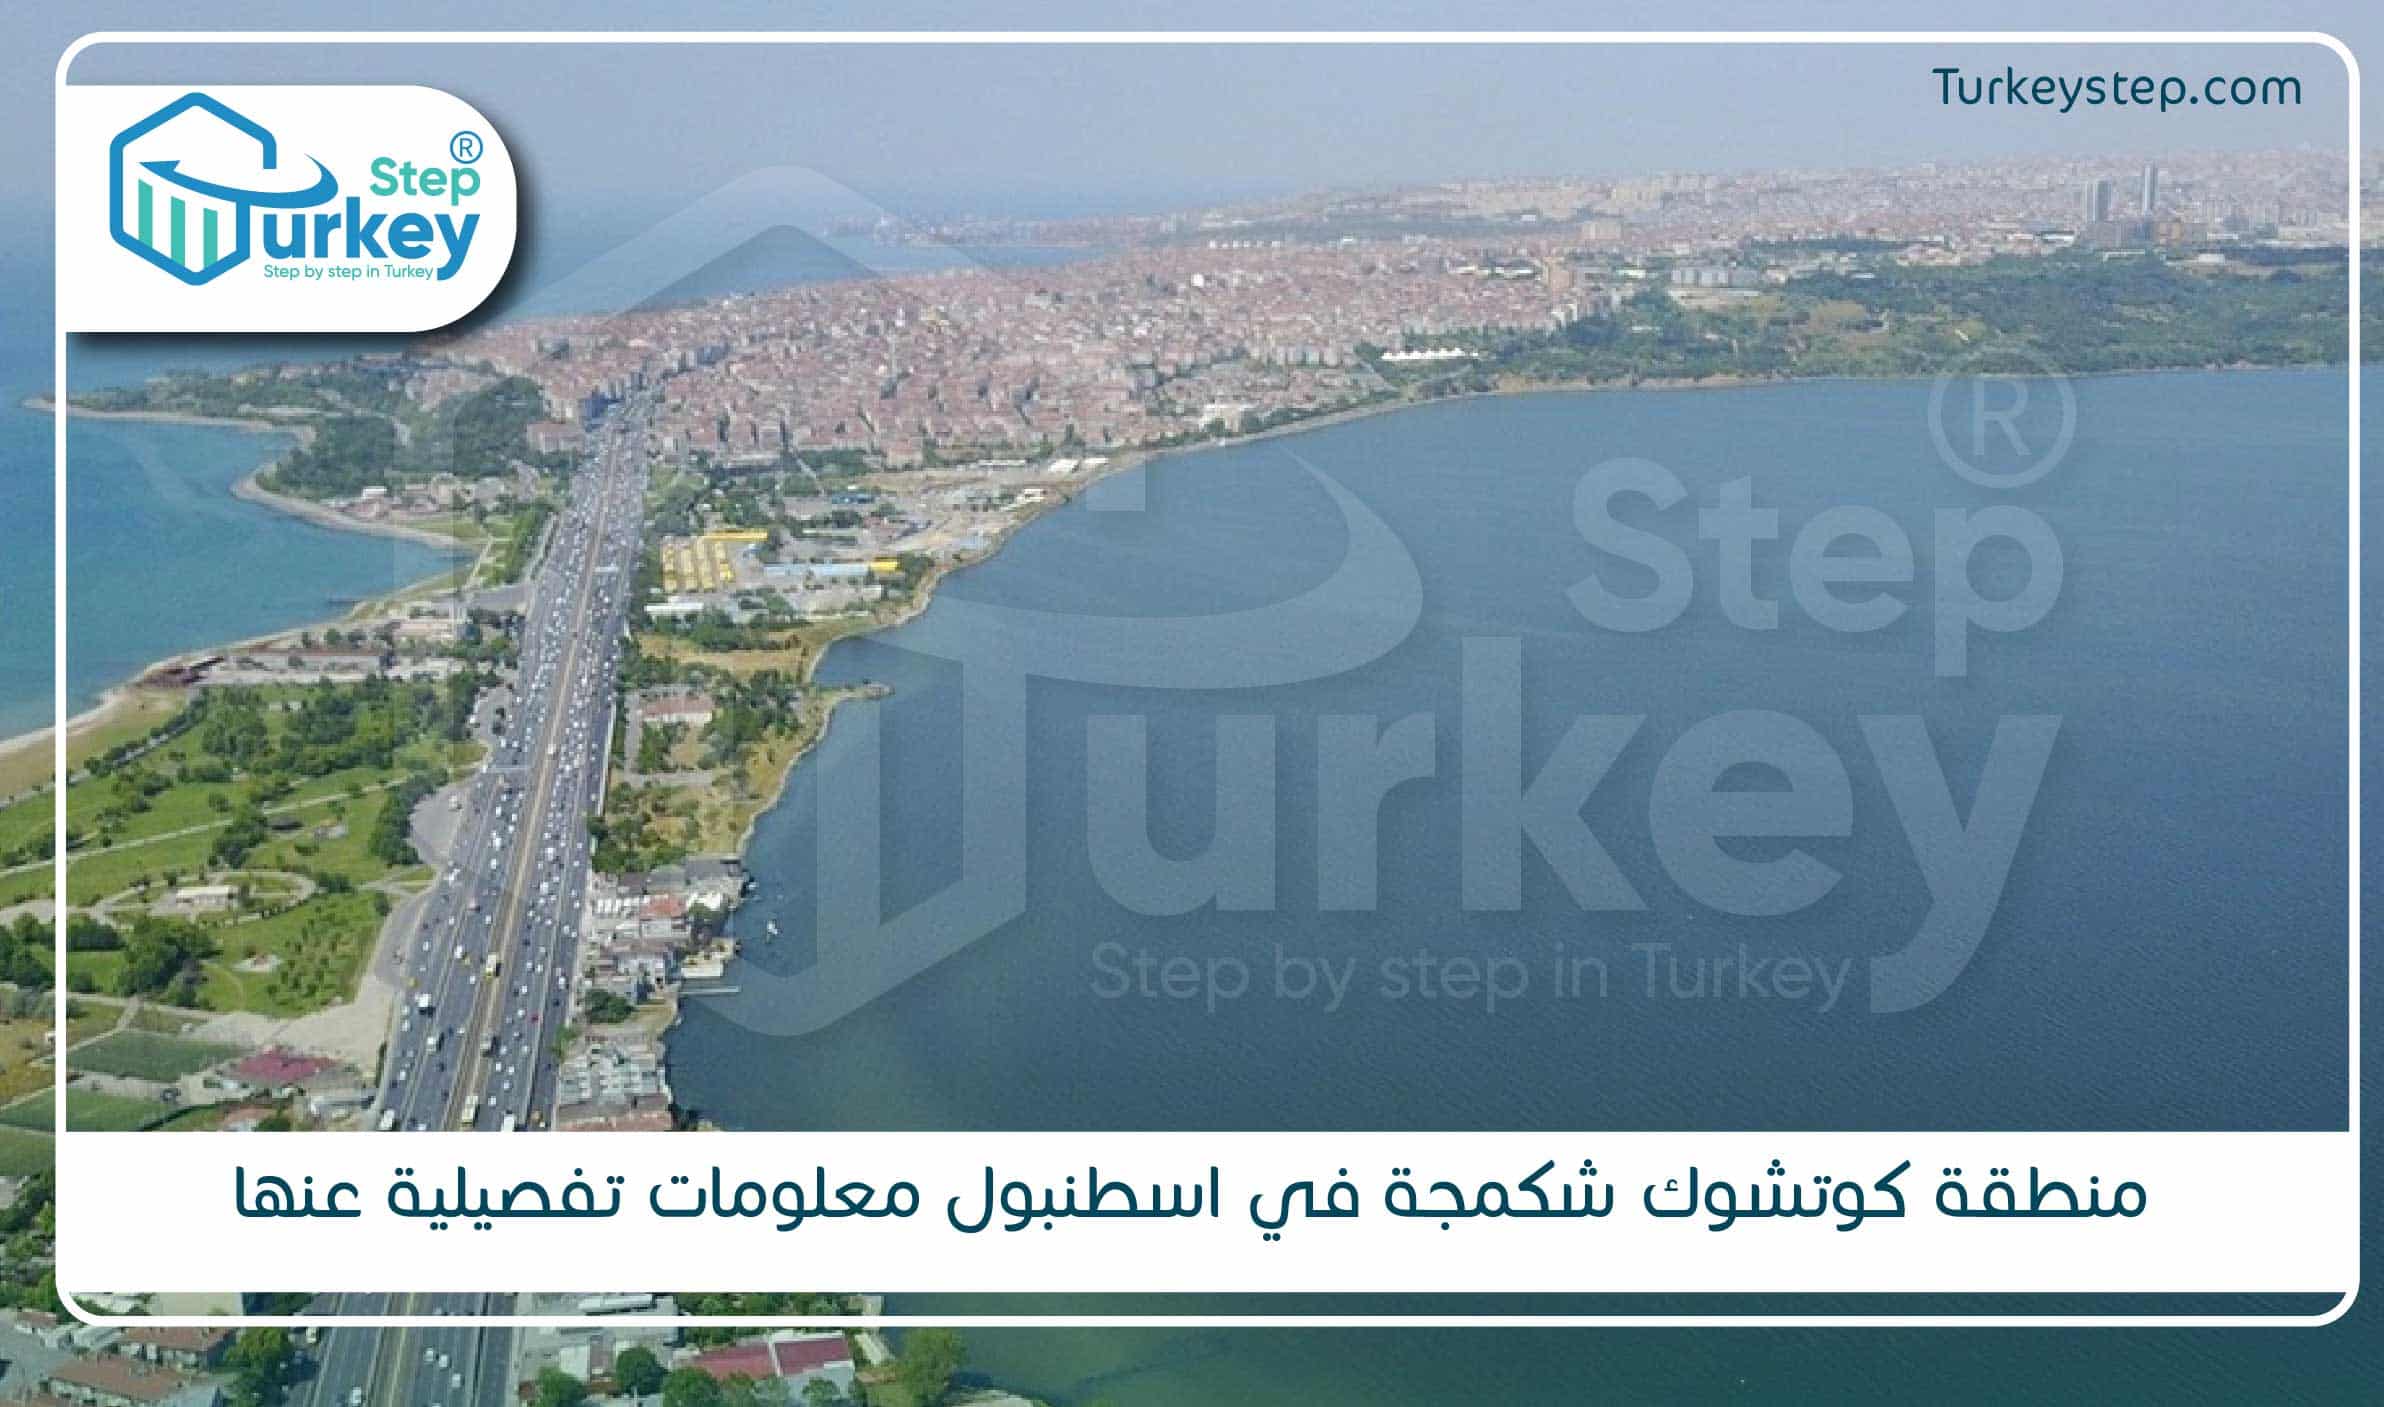 منطقة كوتشوك شكمجة في اسطنبول معلومات تفصيلية عنها-01